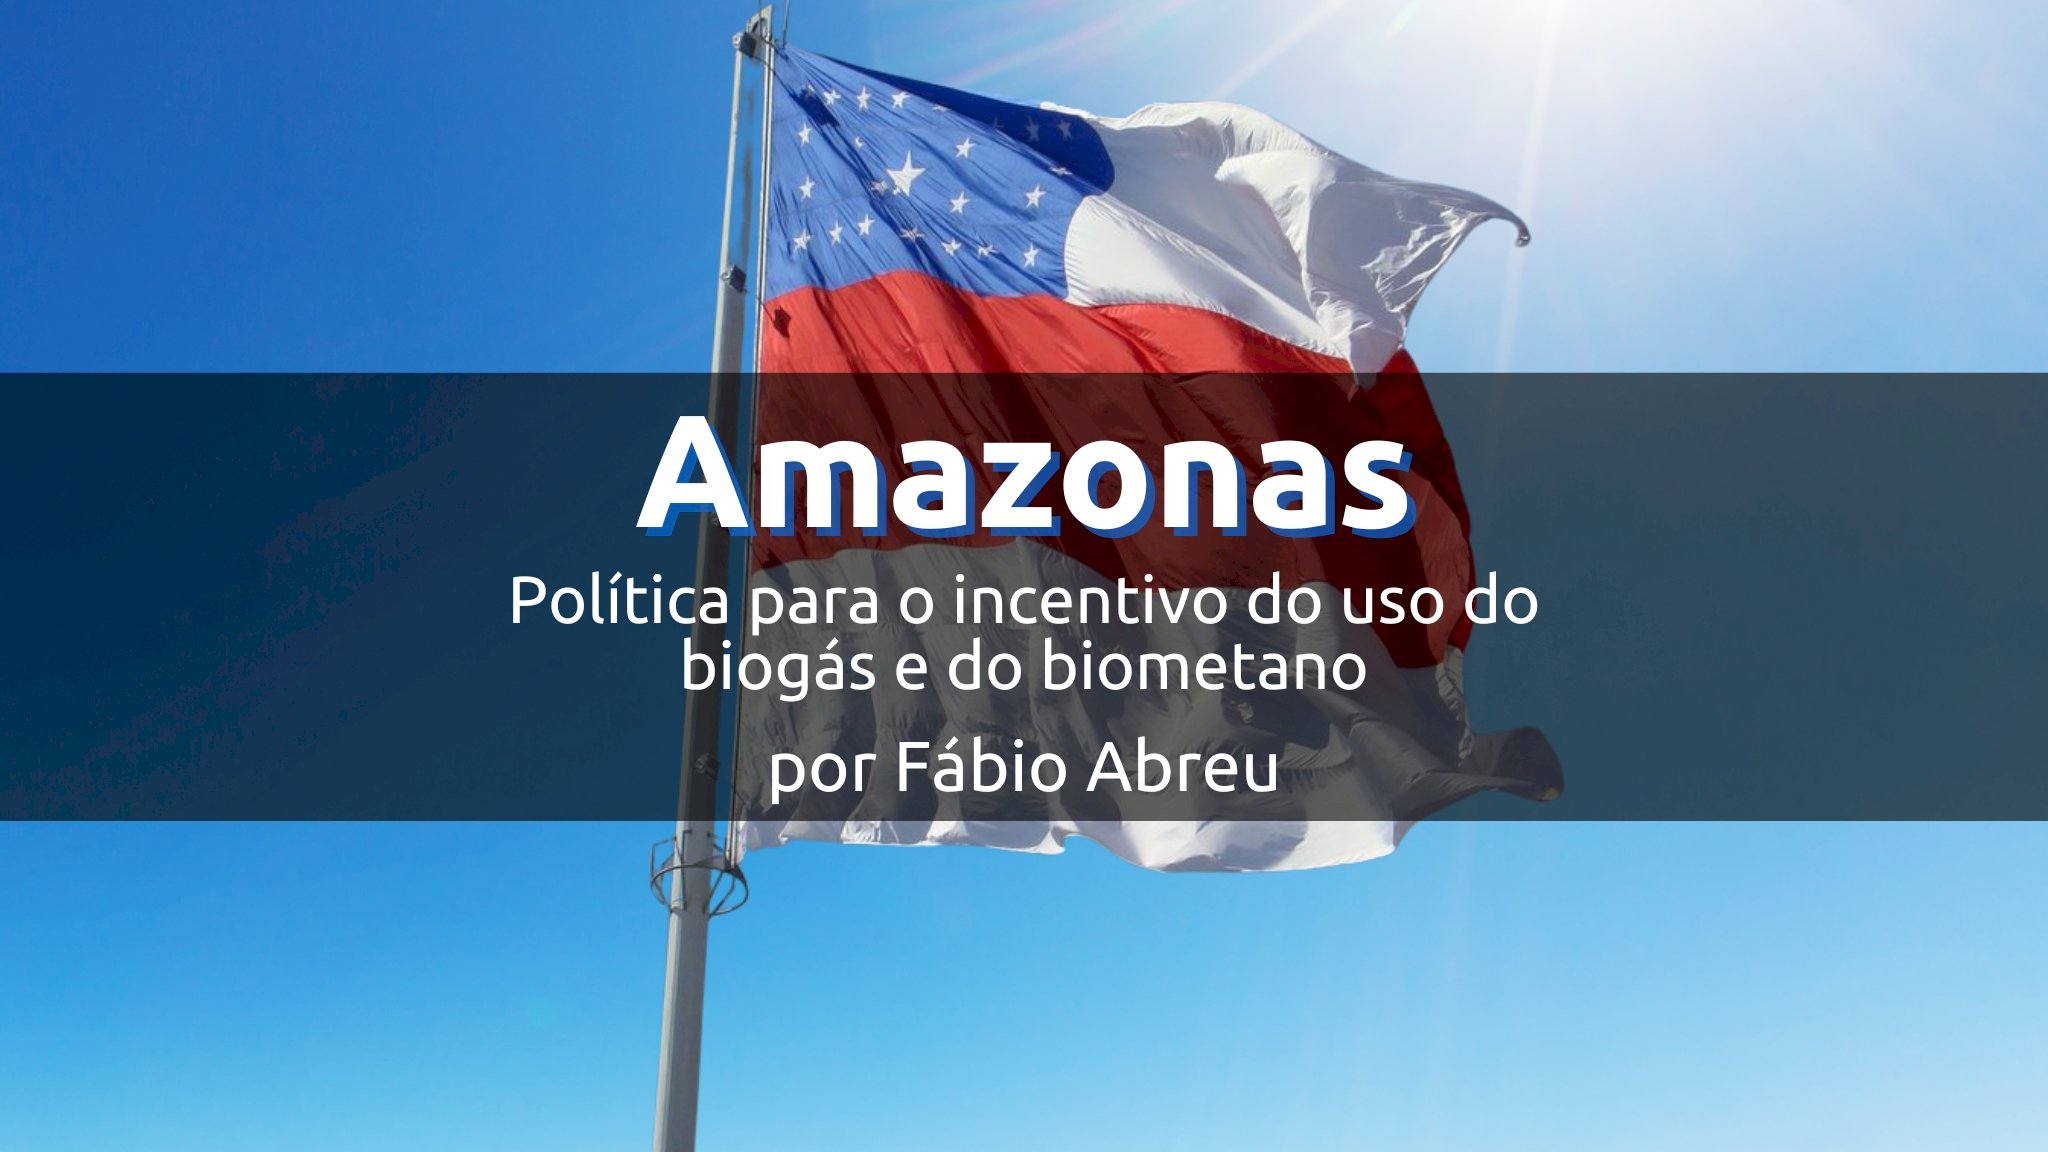 Amazonas e o projeto de lei para incentivo do biogás e biometano